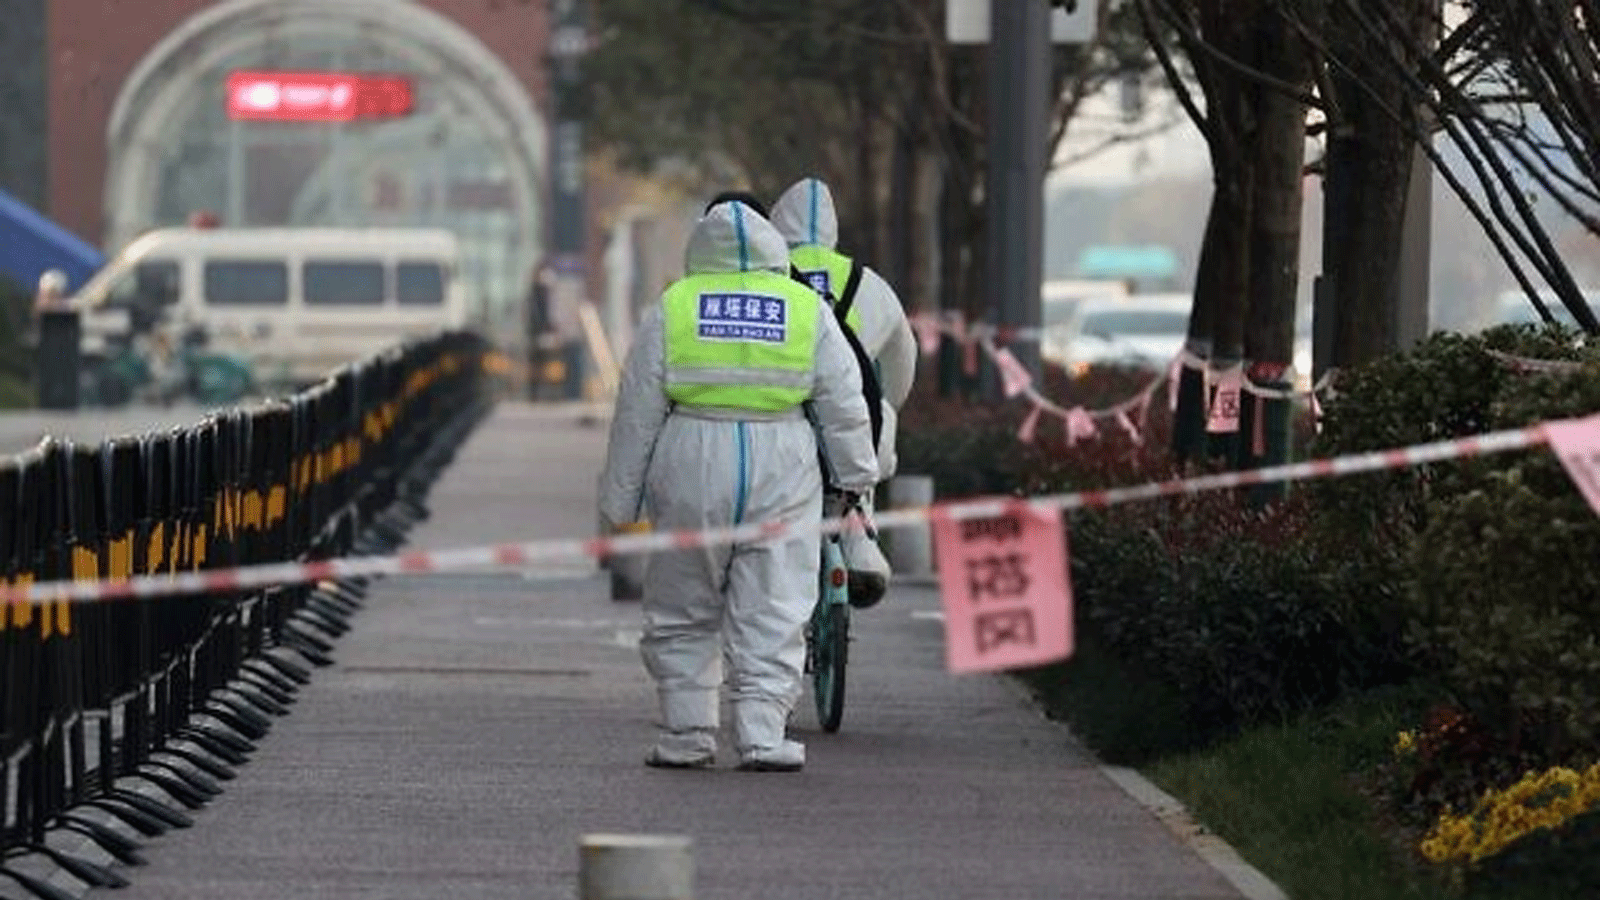 حراس الأمن يسيرون في منطقة خاضعة للقيود في أعقاب تفشي فيروس كورونا الأخير في مدينة شيان بمقاطعة شنشي شمال الصين في 22 كانون الأول\ ديسمبر 2021